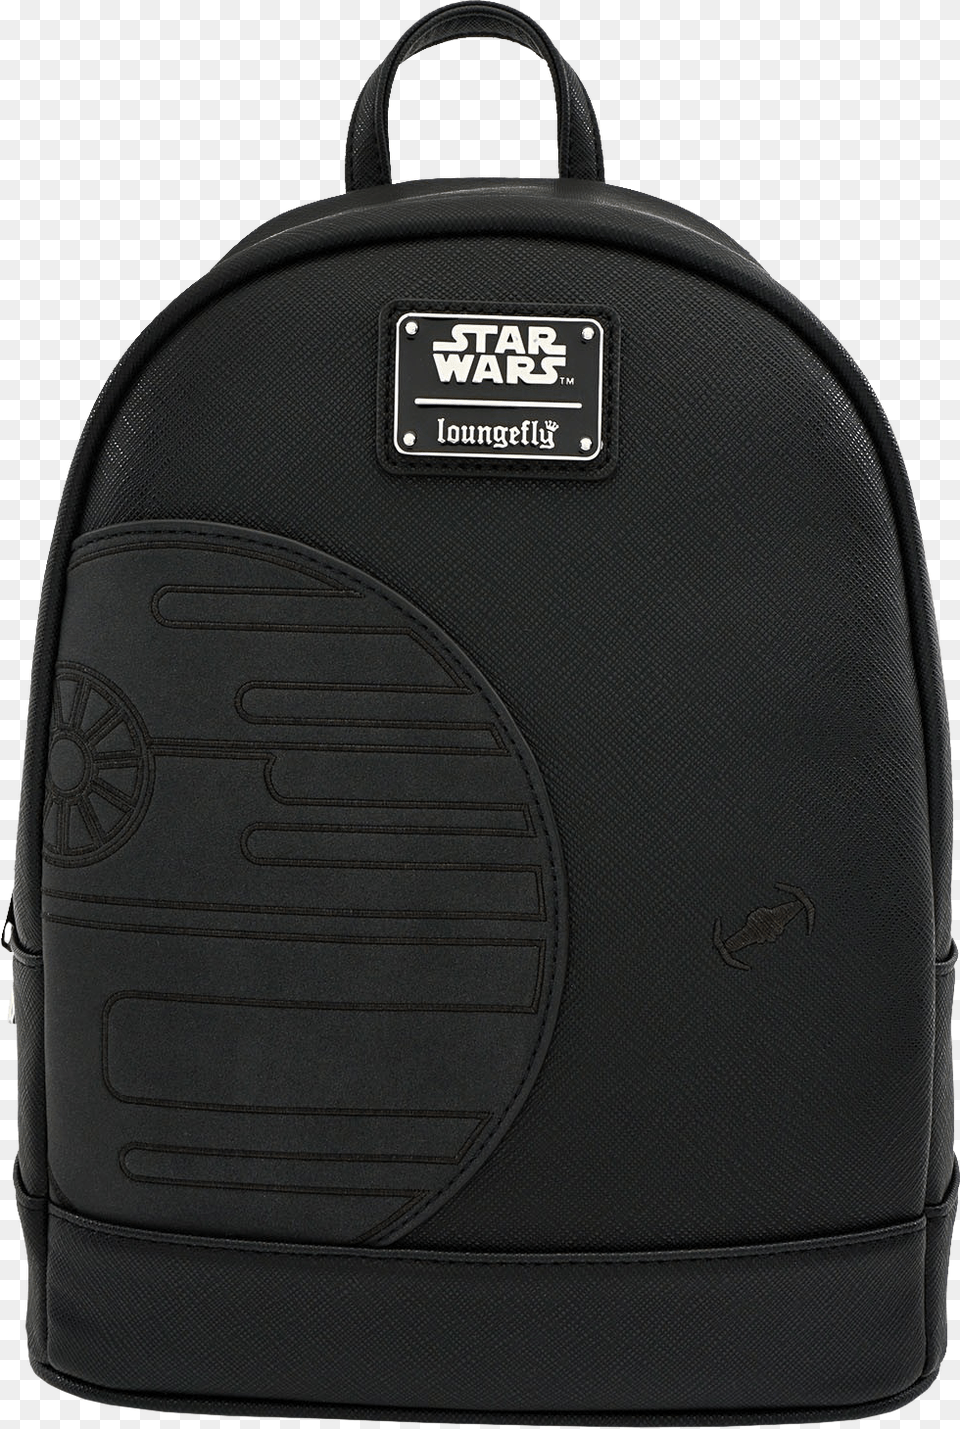 Black Death Star Star Wars, Backpack, Bag, Accessories, Handbag Png